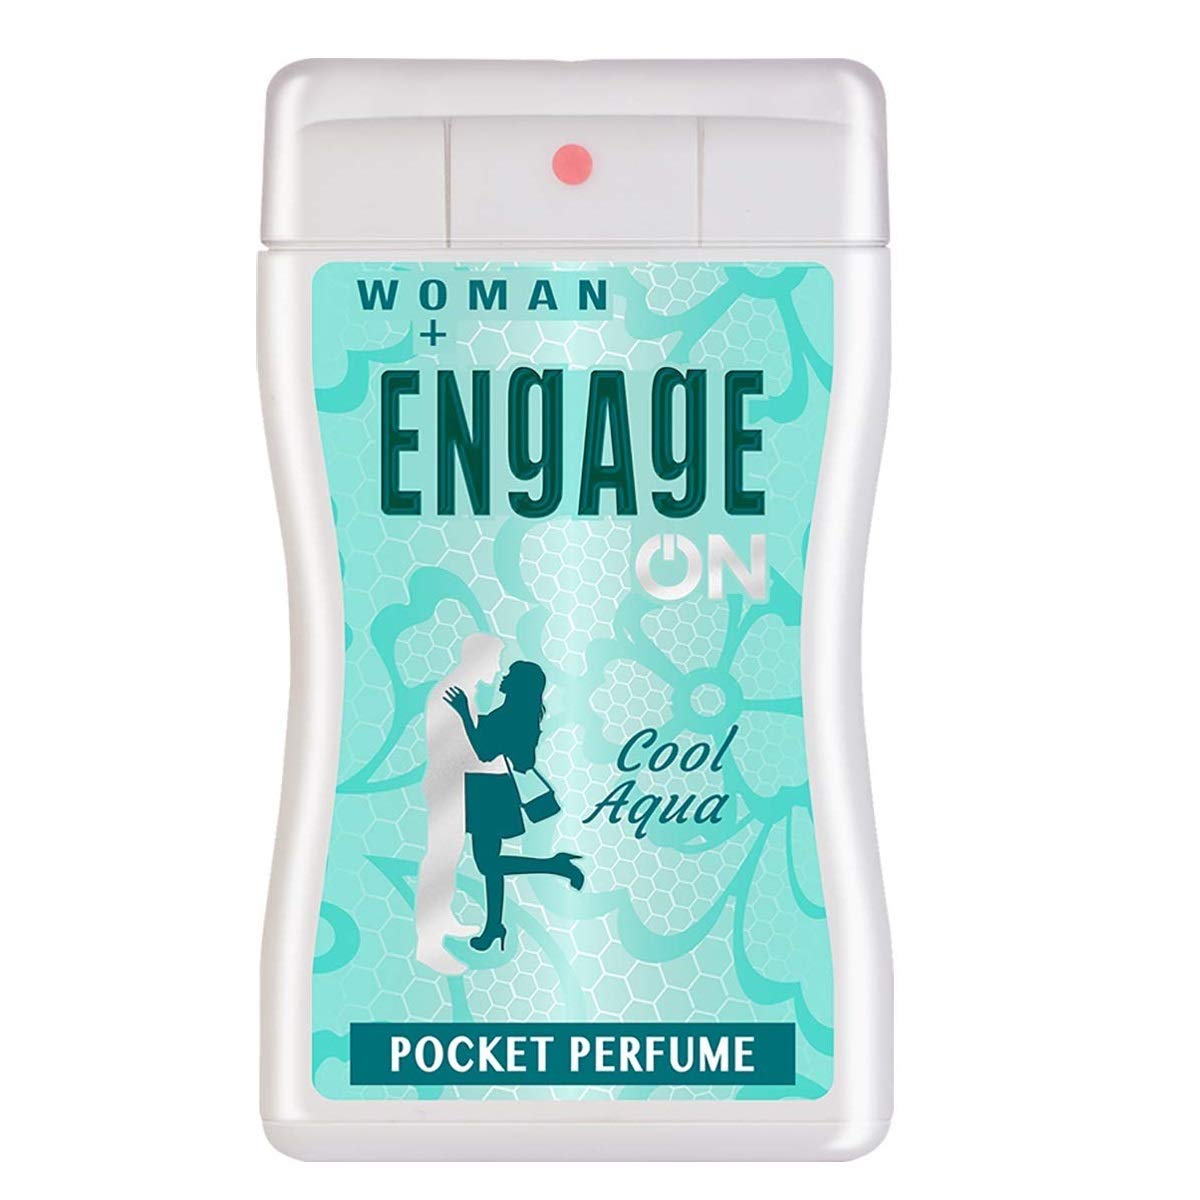 Engage On Woman Pocket Perfume - Cool Aqua (18.8ml) - Niram